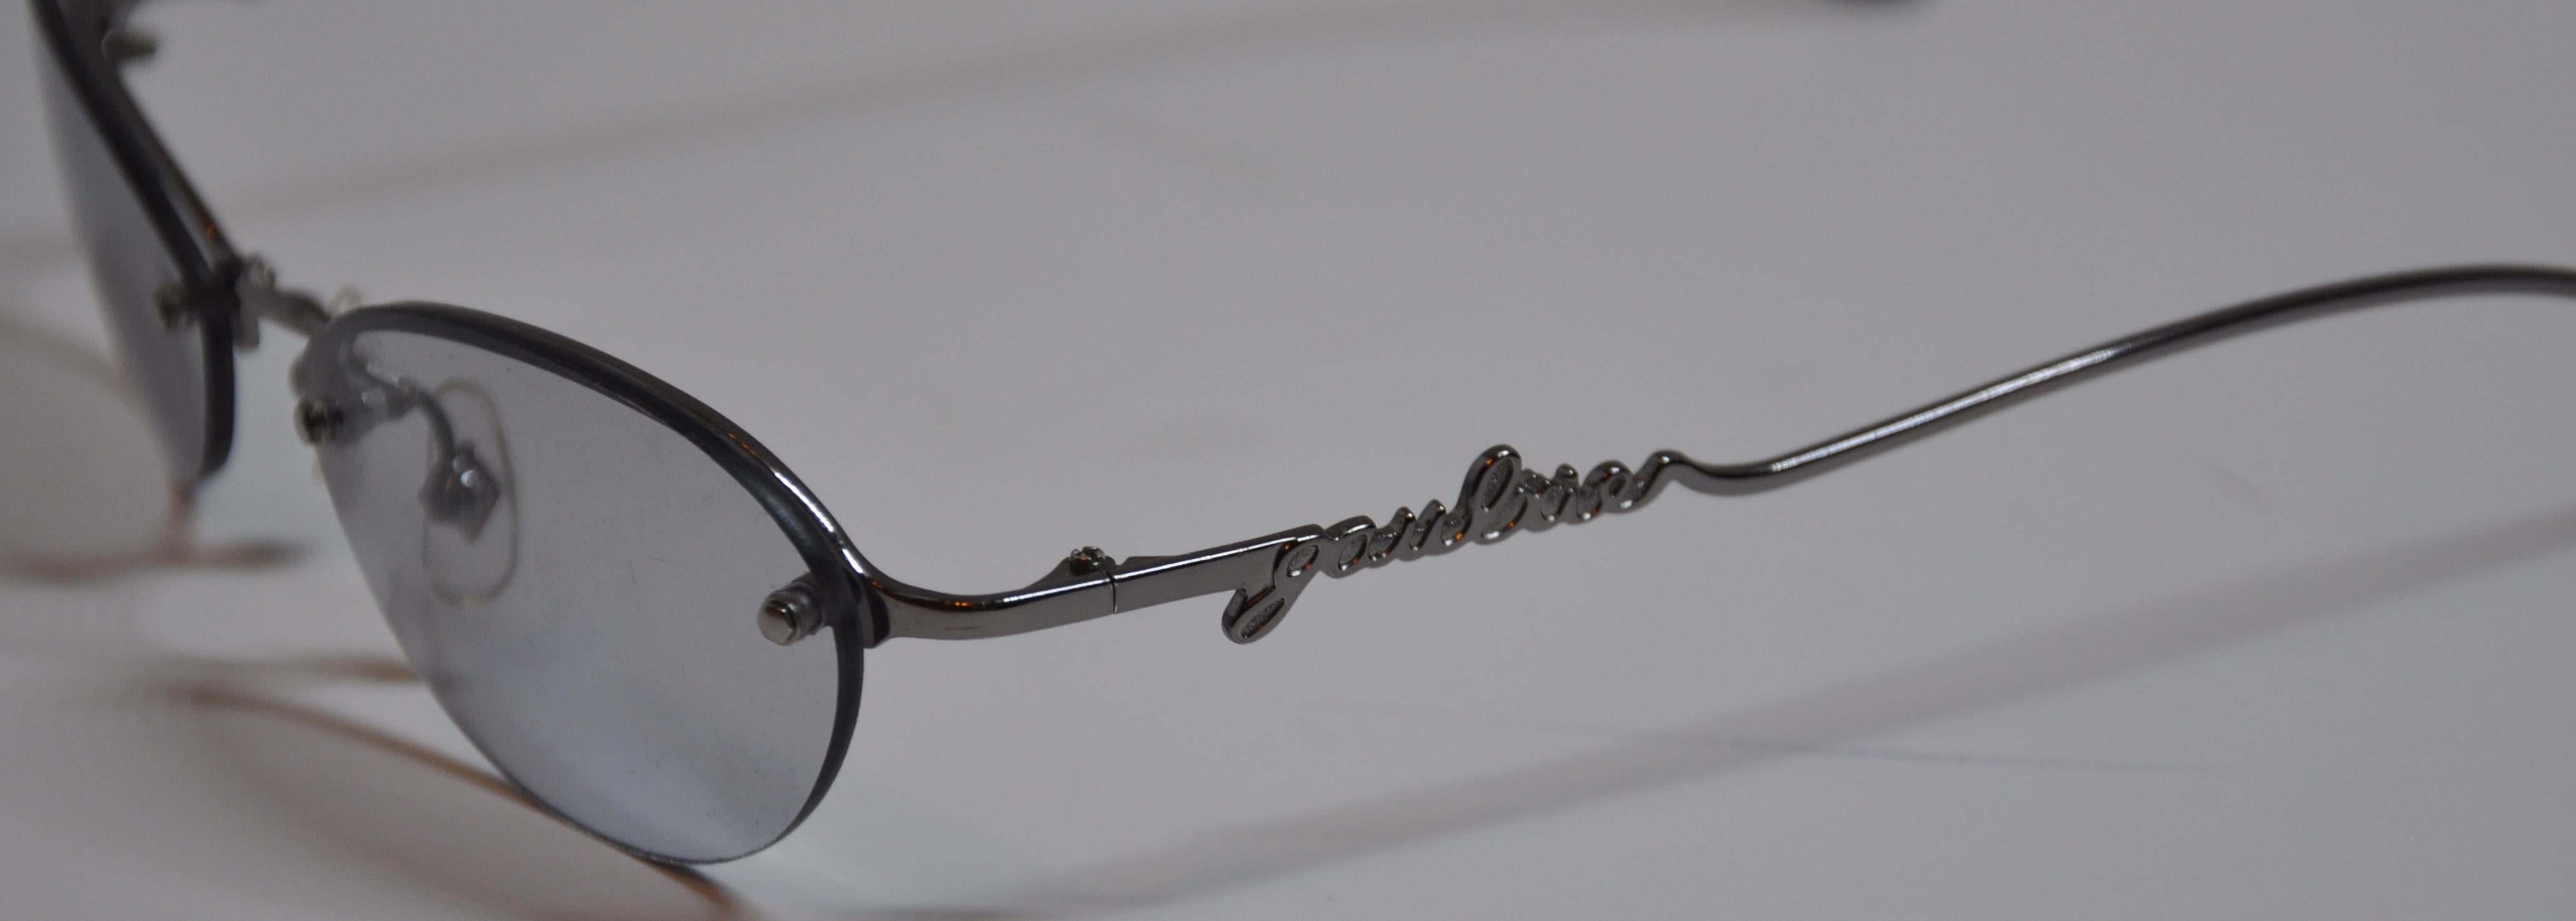 Montures en argent doré de Jean Paul Gaultier accentuées par le nom de la signature en script sur les deux branches de ces lunettes à verres correcteurs. Le pont est orné de JPG et l'avant est rehaussé de clous de quincaillerie argentés. La longueur